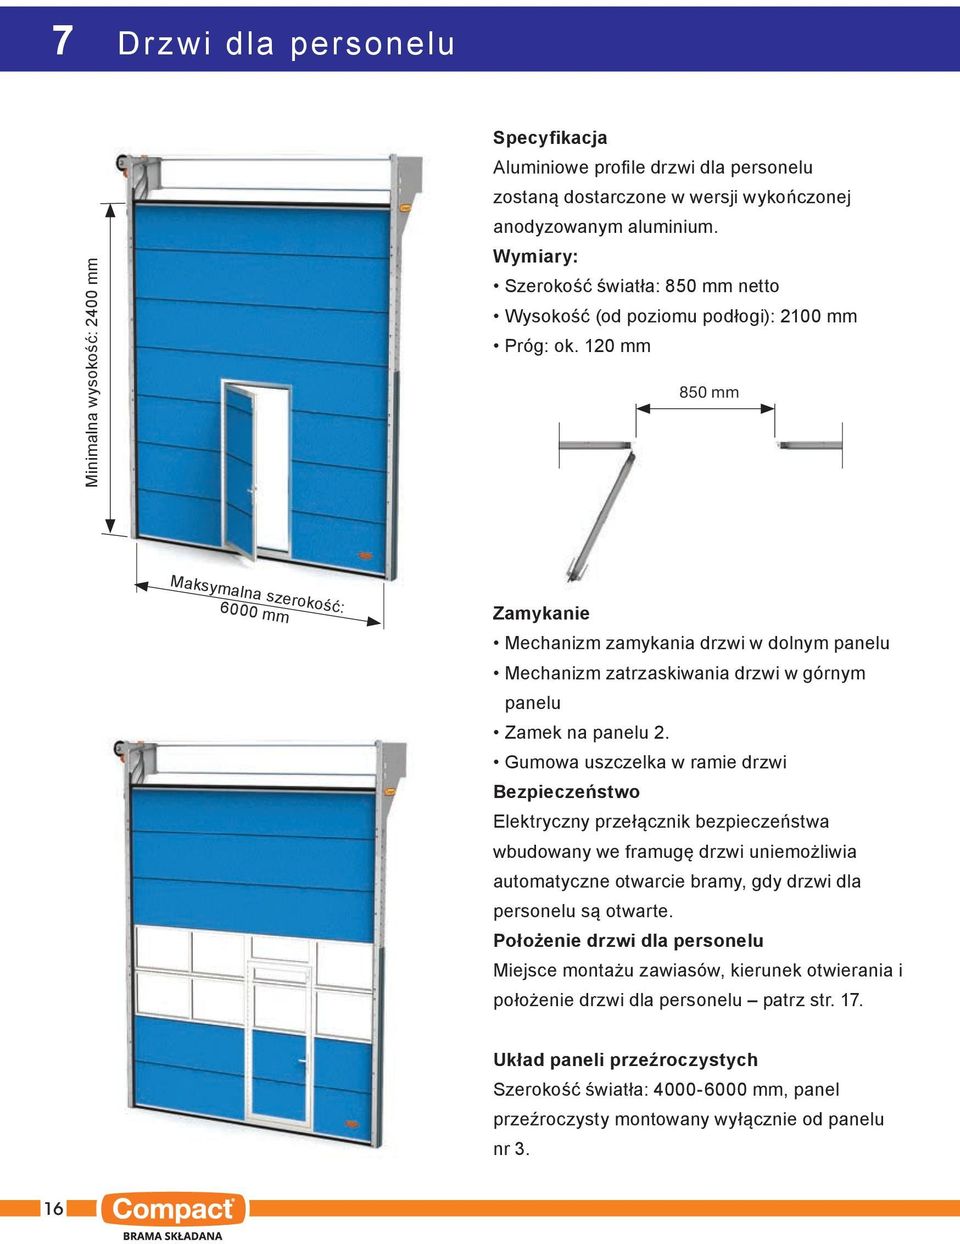 120 mm 850 mm Maksymalna szerokość: 6000 mm Zamykanie Mechanizm zamykania drzwi w dolnym panelu Mechanizm zatrzaskiwania drzwi w górnym panelu Zamek na panelu 2.